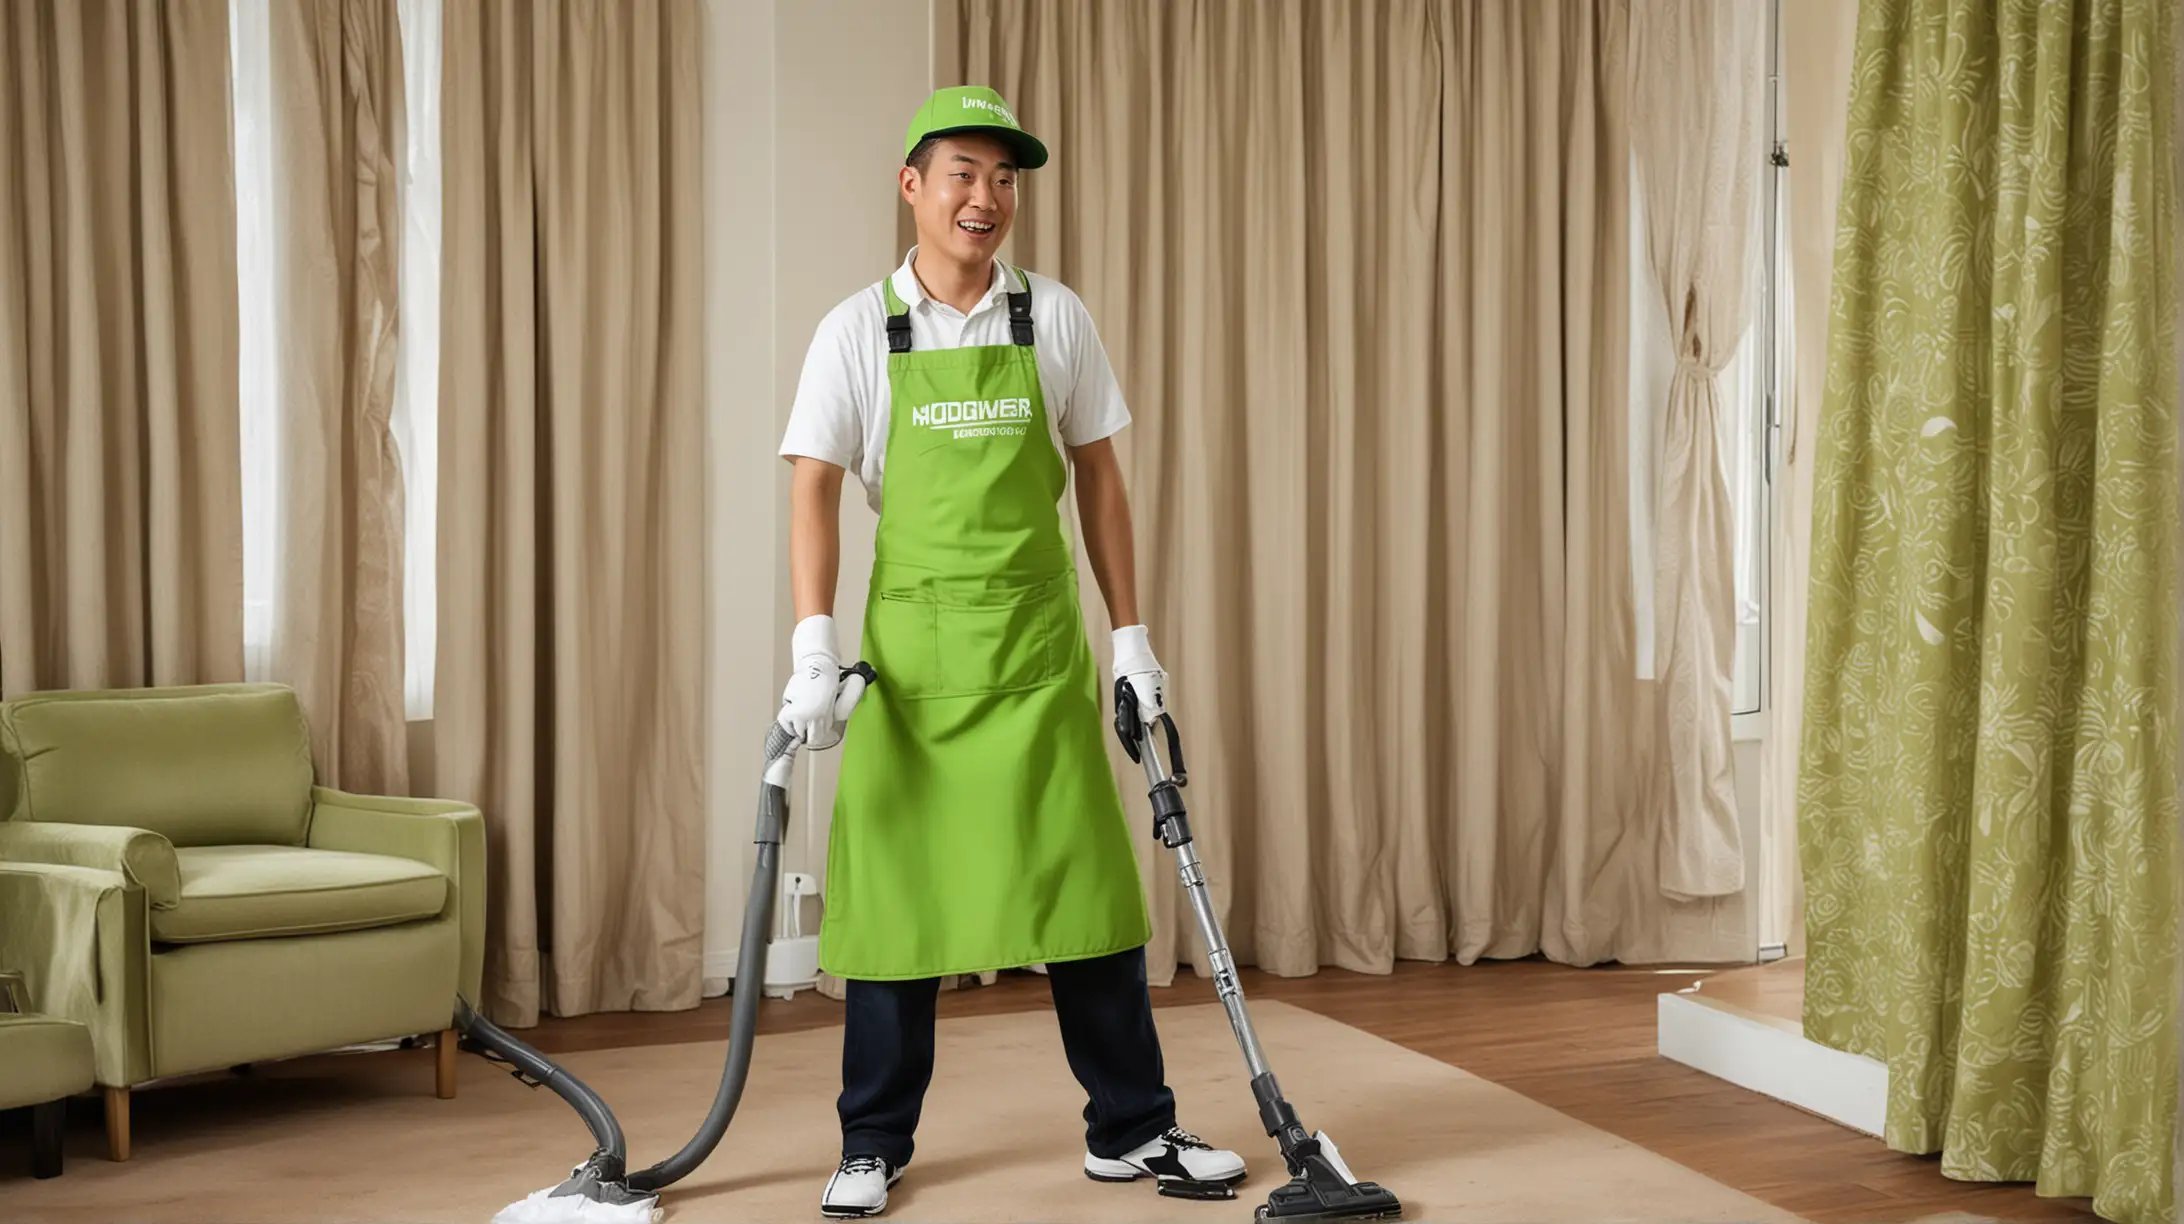 一位中国男家政，戴着棒球帽，戴着白色手套，拿着福维克吸尘器微笑着正在吸尘，穿着湖绿色围裙。背景是窗帘

